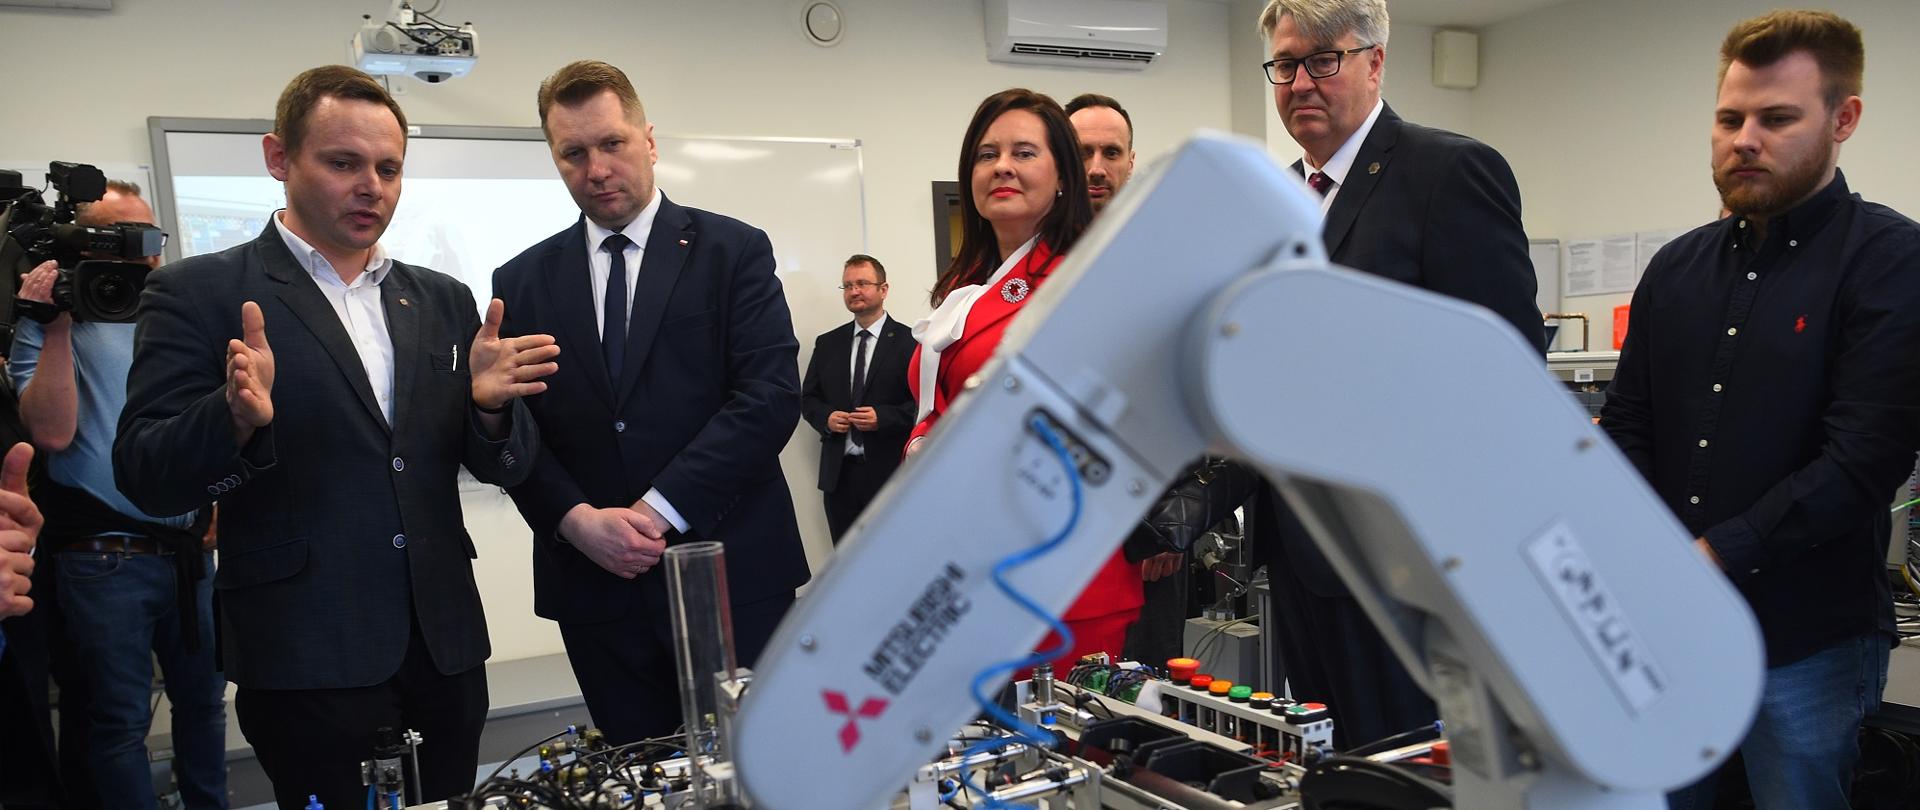 Wizyta na Politechnice Opolskiej. Minister ogląda ramię robota.